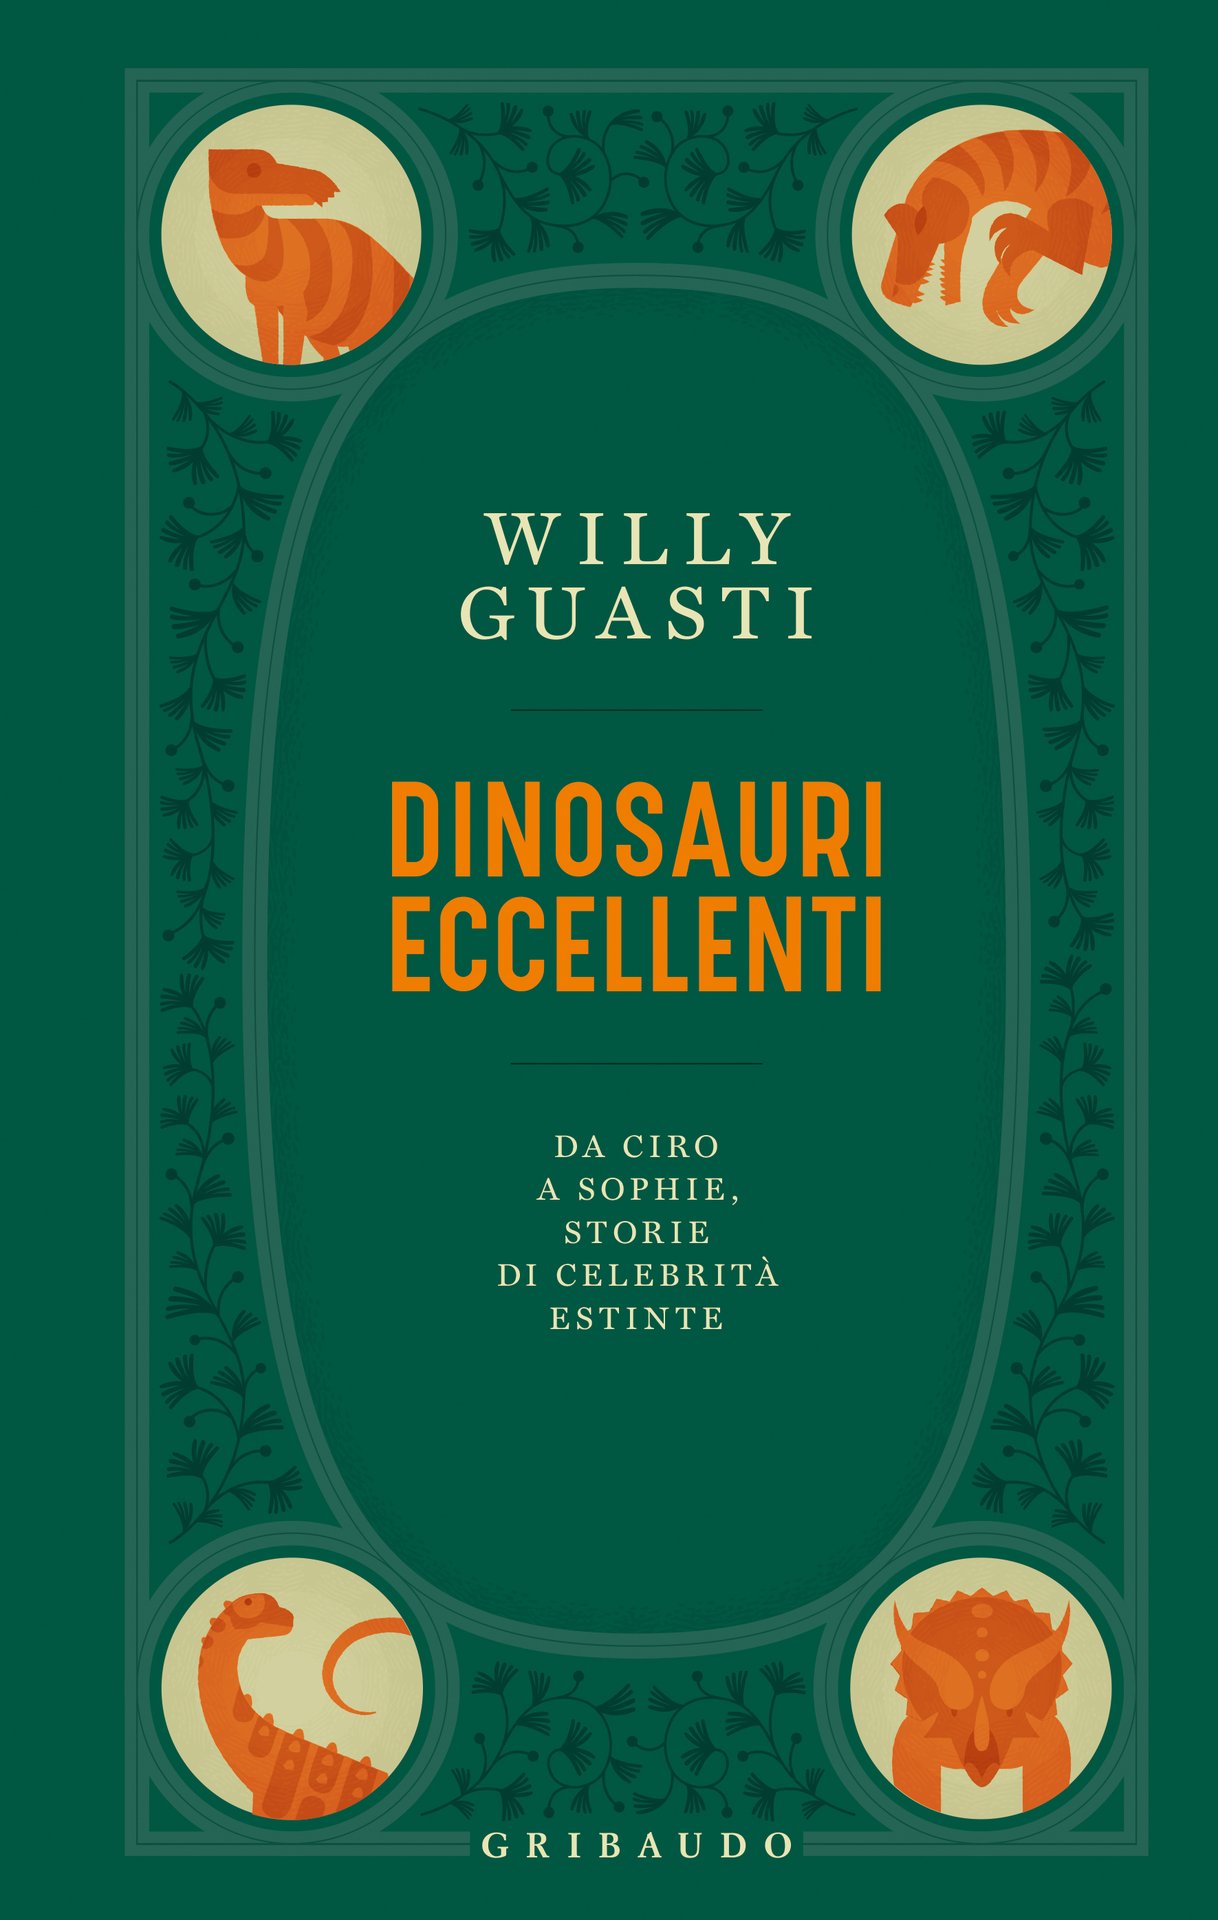 Willy Guasti presenta Dinosauri eccellenti a Calci (PI)